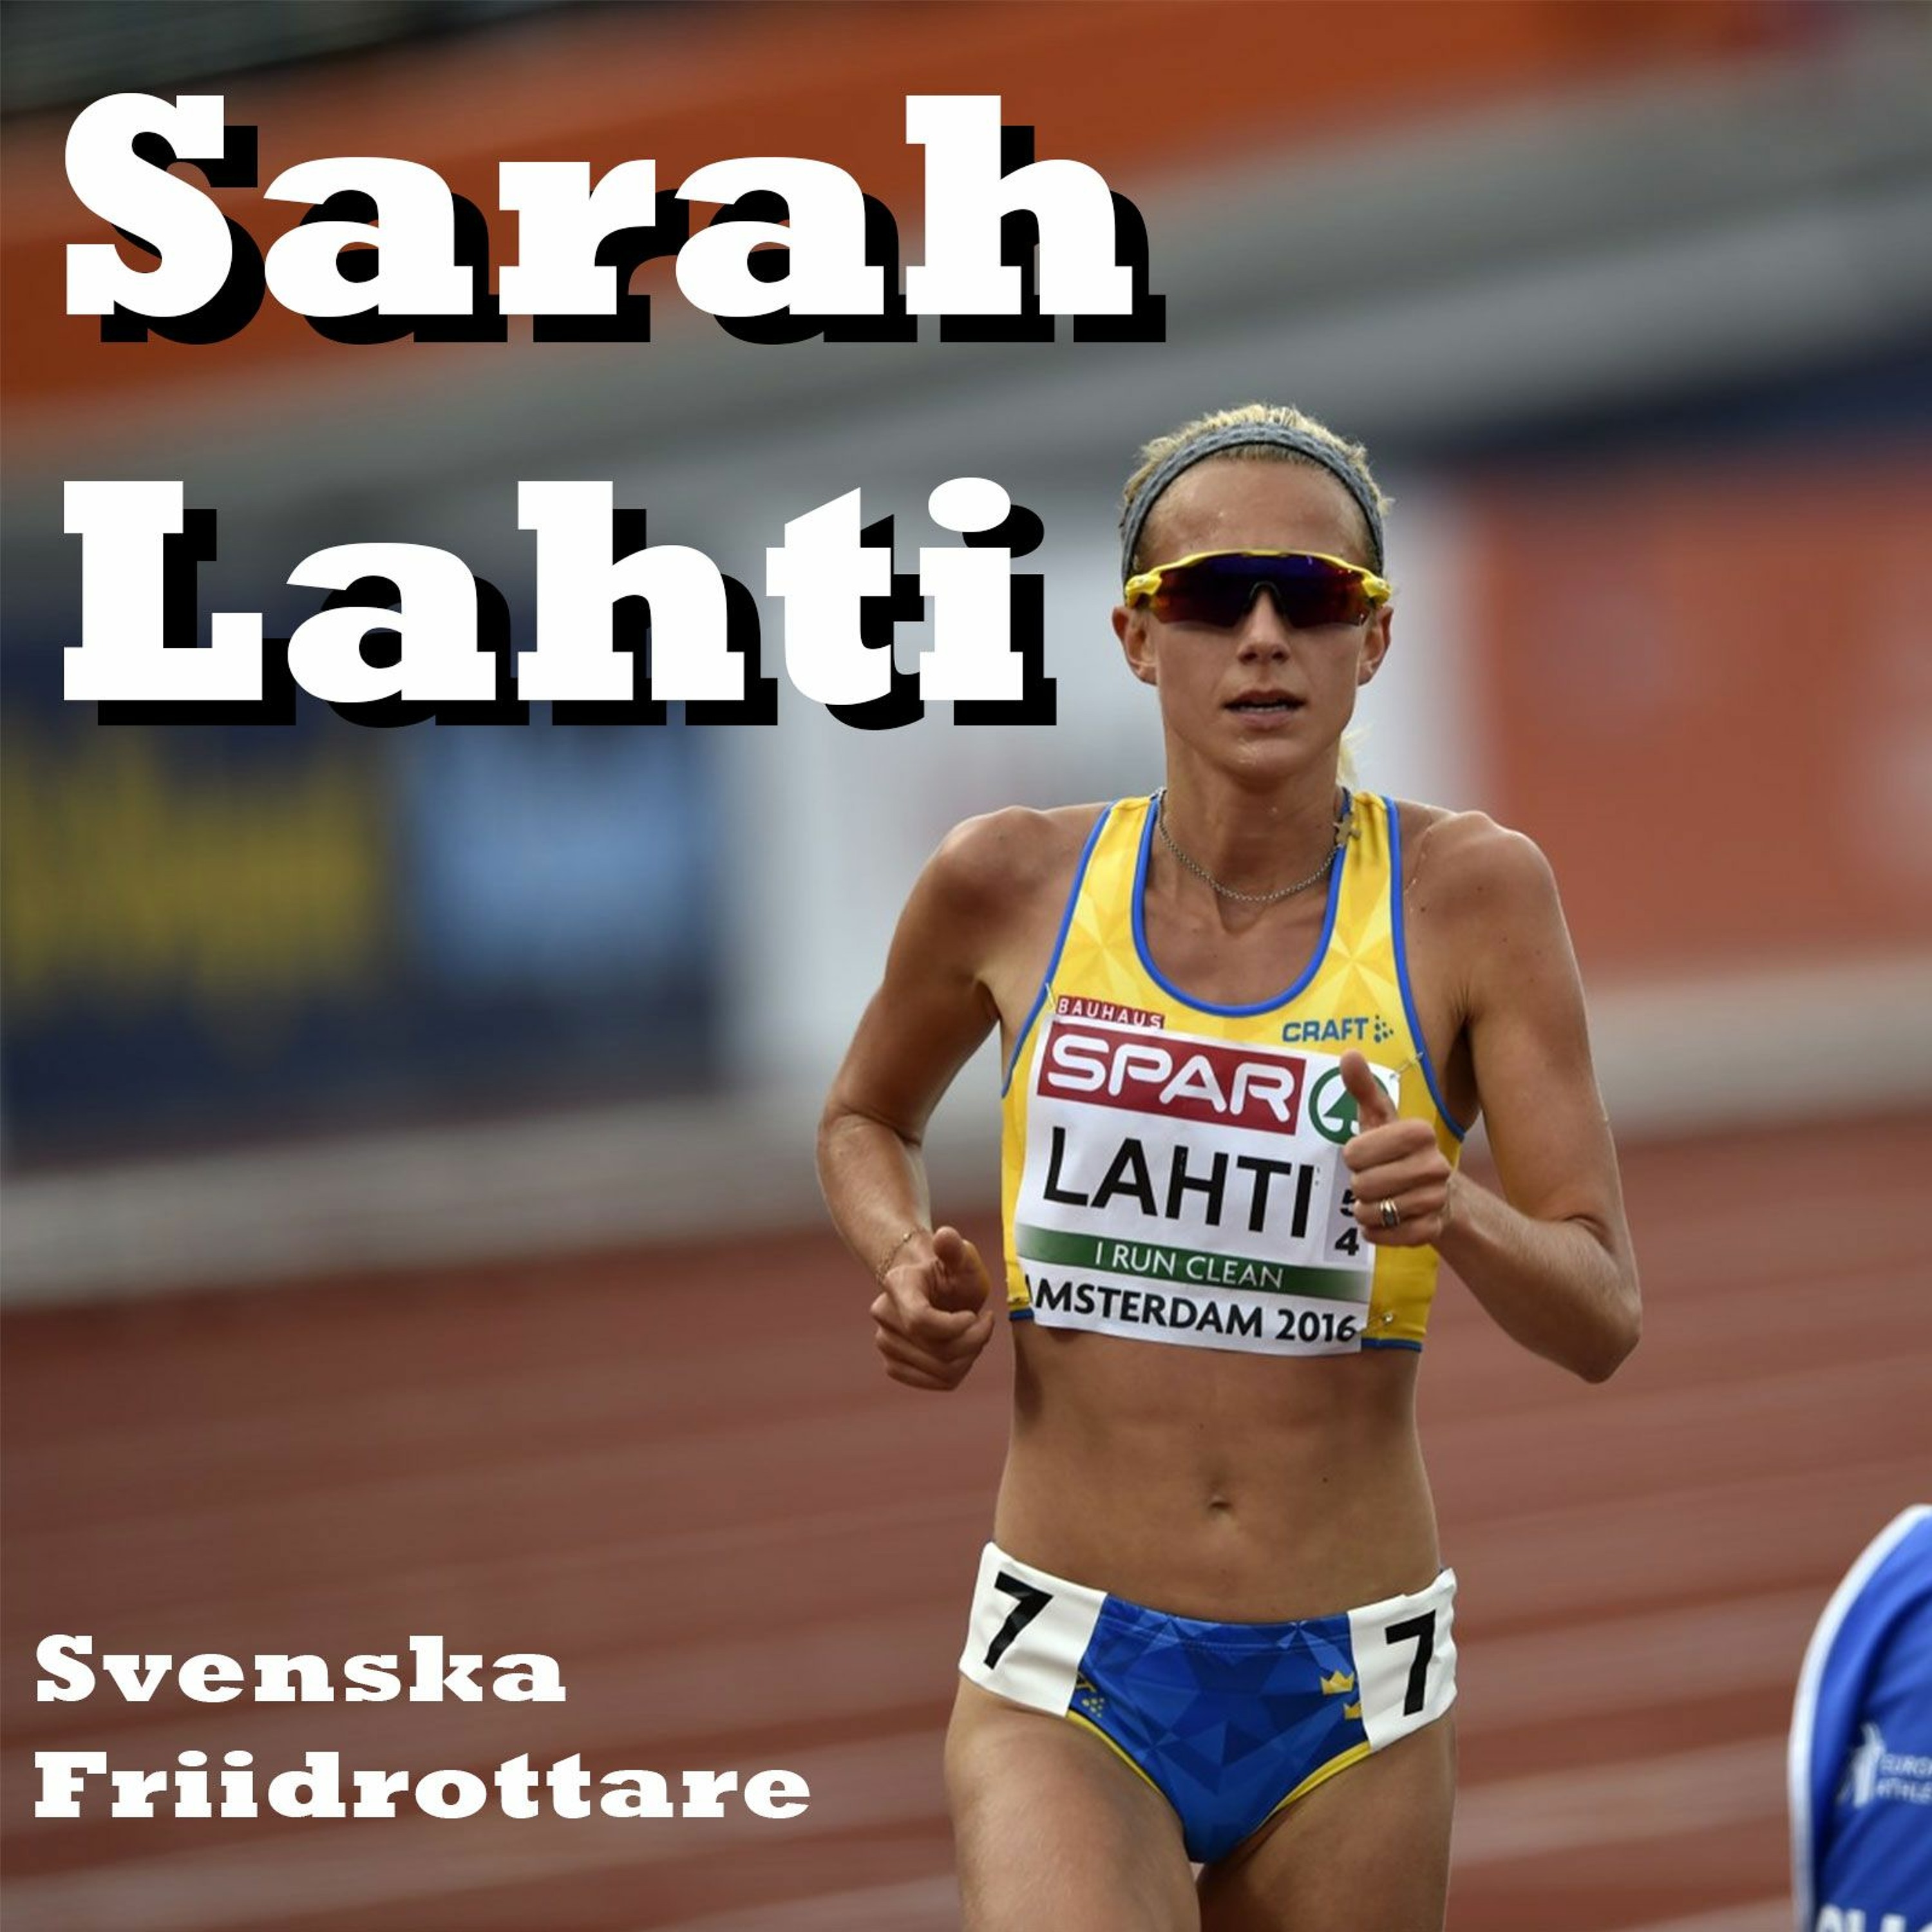 37. Sarah Lahti